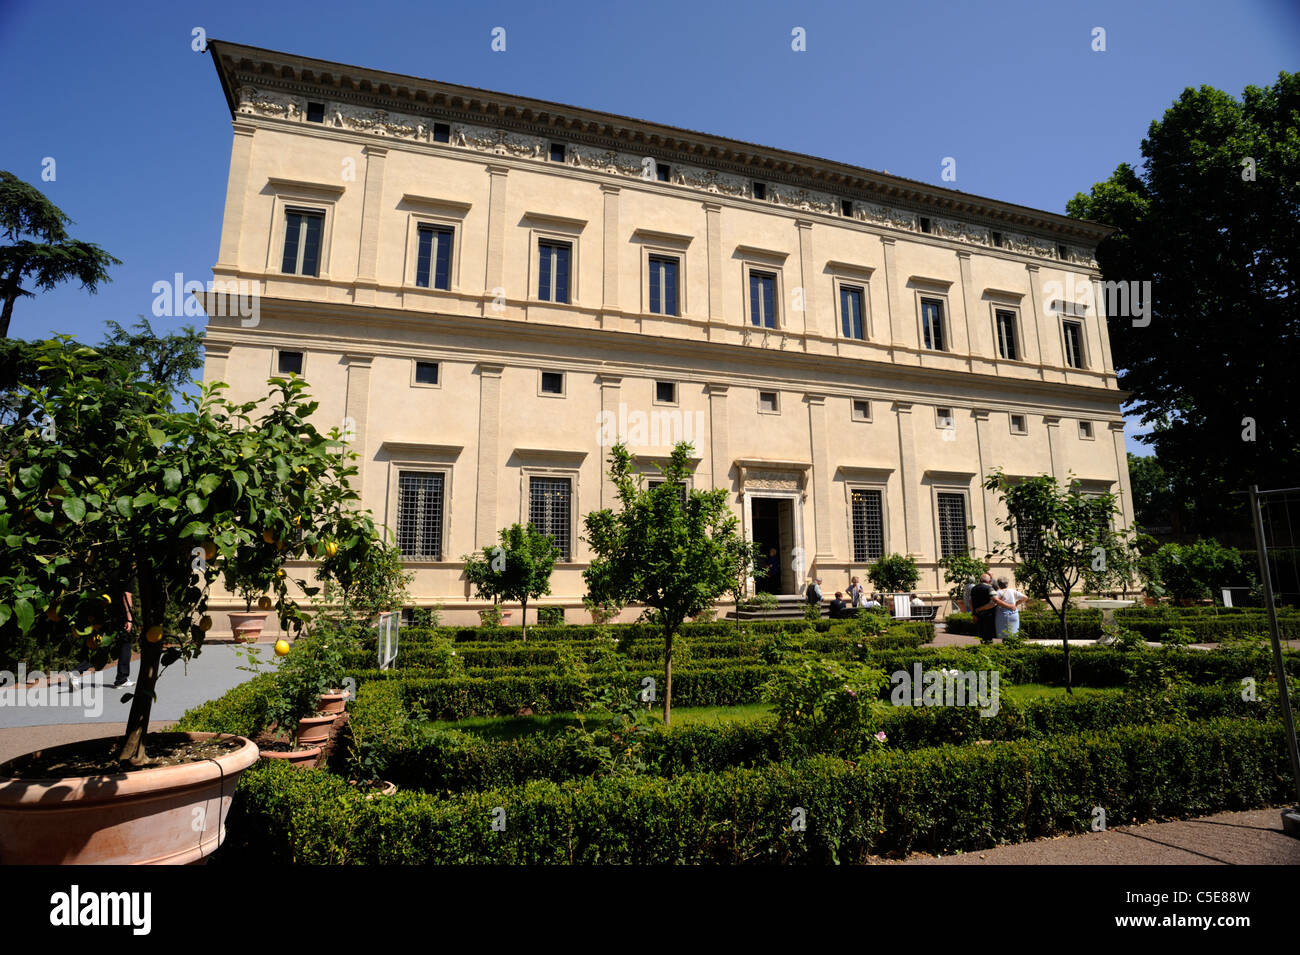 Italia, Roma, Trastevere, villa farnesina (Villa Chigi), jardín renacentista Foto de stock